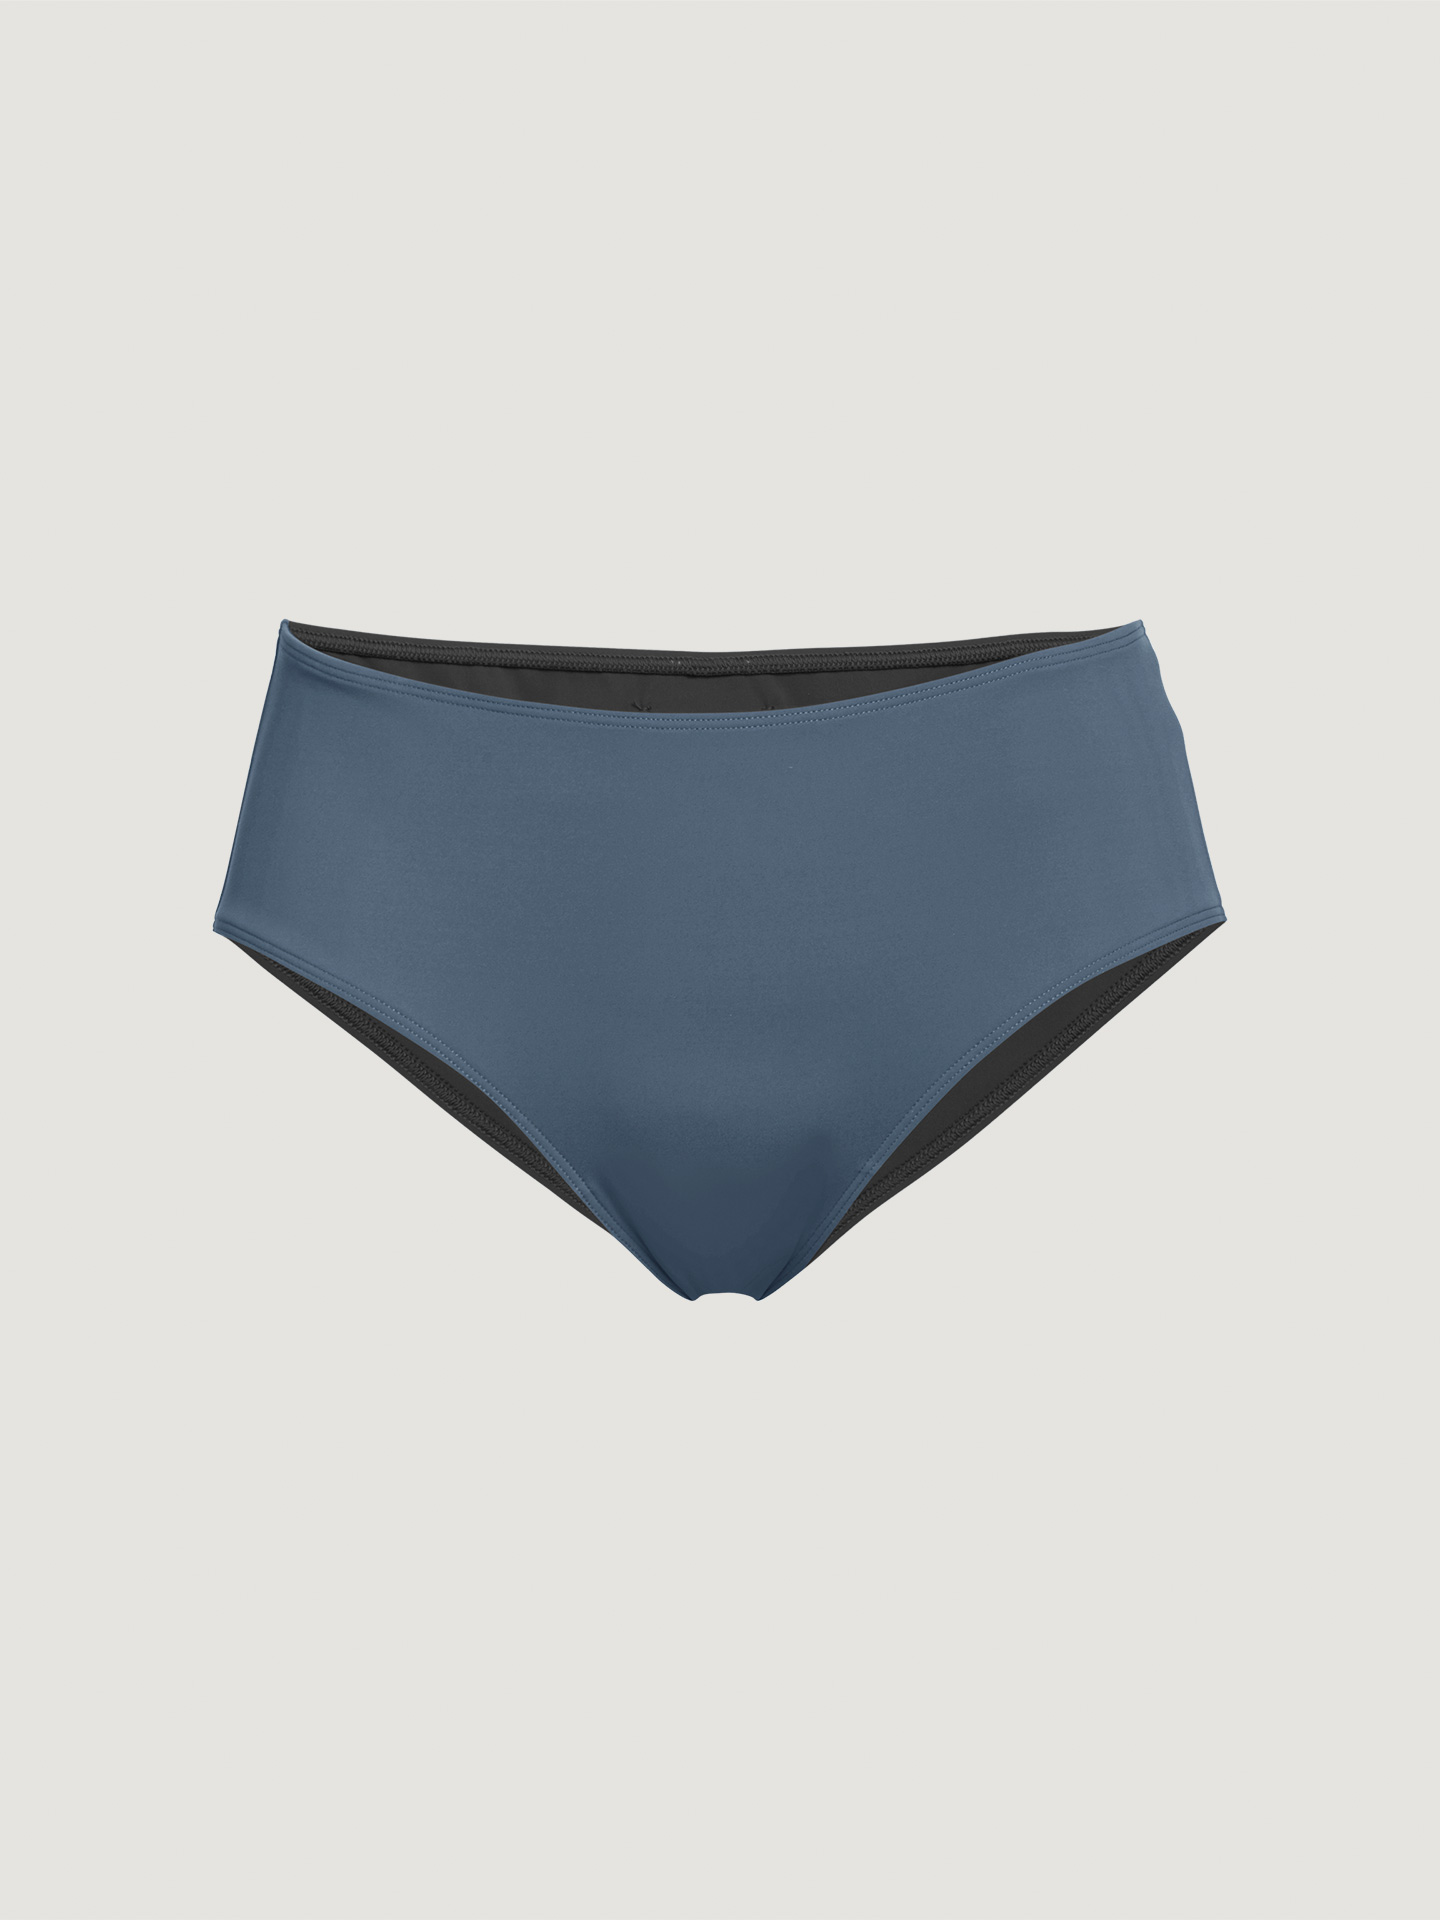 Wolford - Reversible Beach Shorts, Frau, pacific blue/black, Größe: L günstig online kaufen